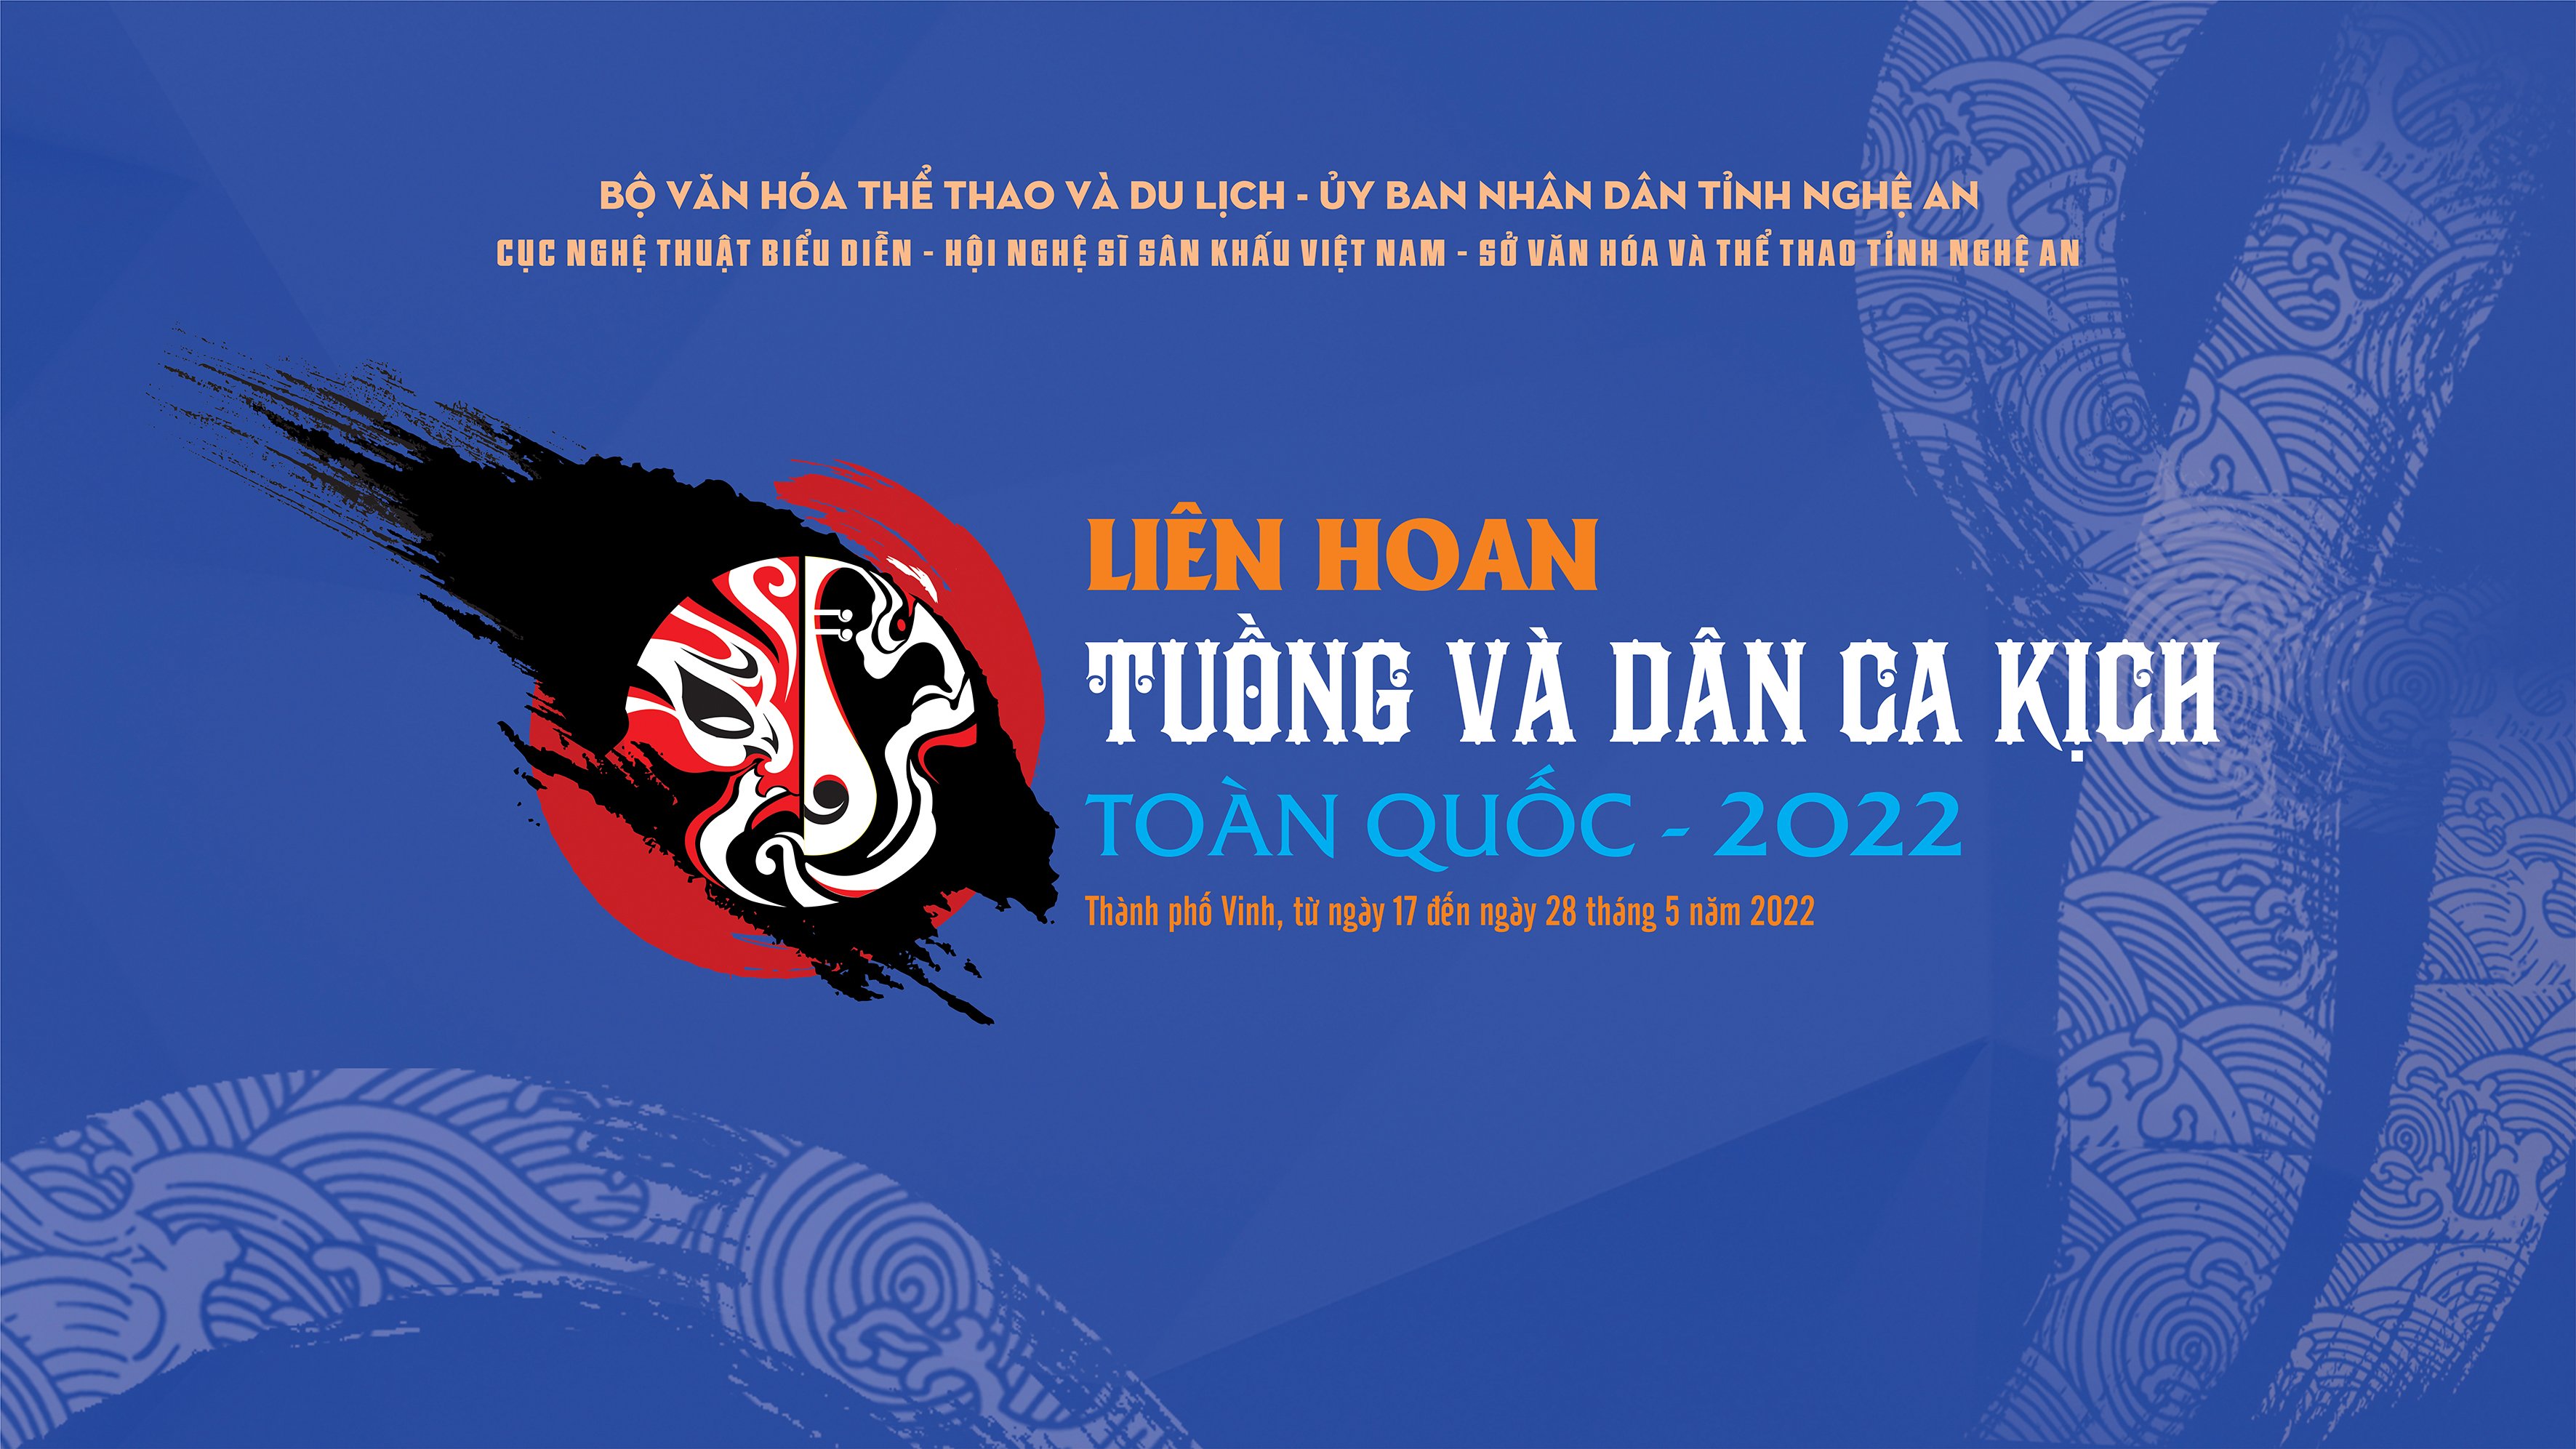 LIÊN HOAN TUỒNG VÀ DÂN CA KỊCH TOÀN QUỐC 2022 - Hoàng đế Lê Đại Hành, Nhà hát nghệ thuật truyền thống Thanh Hóa